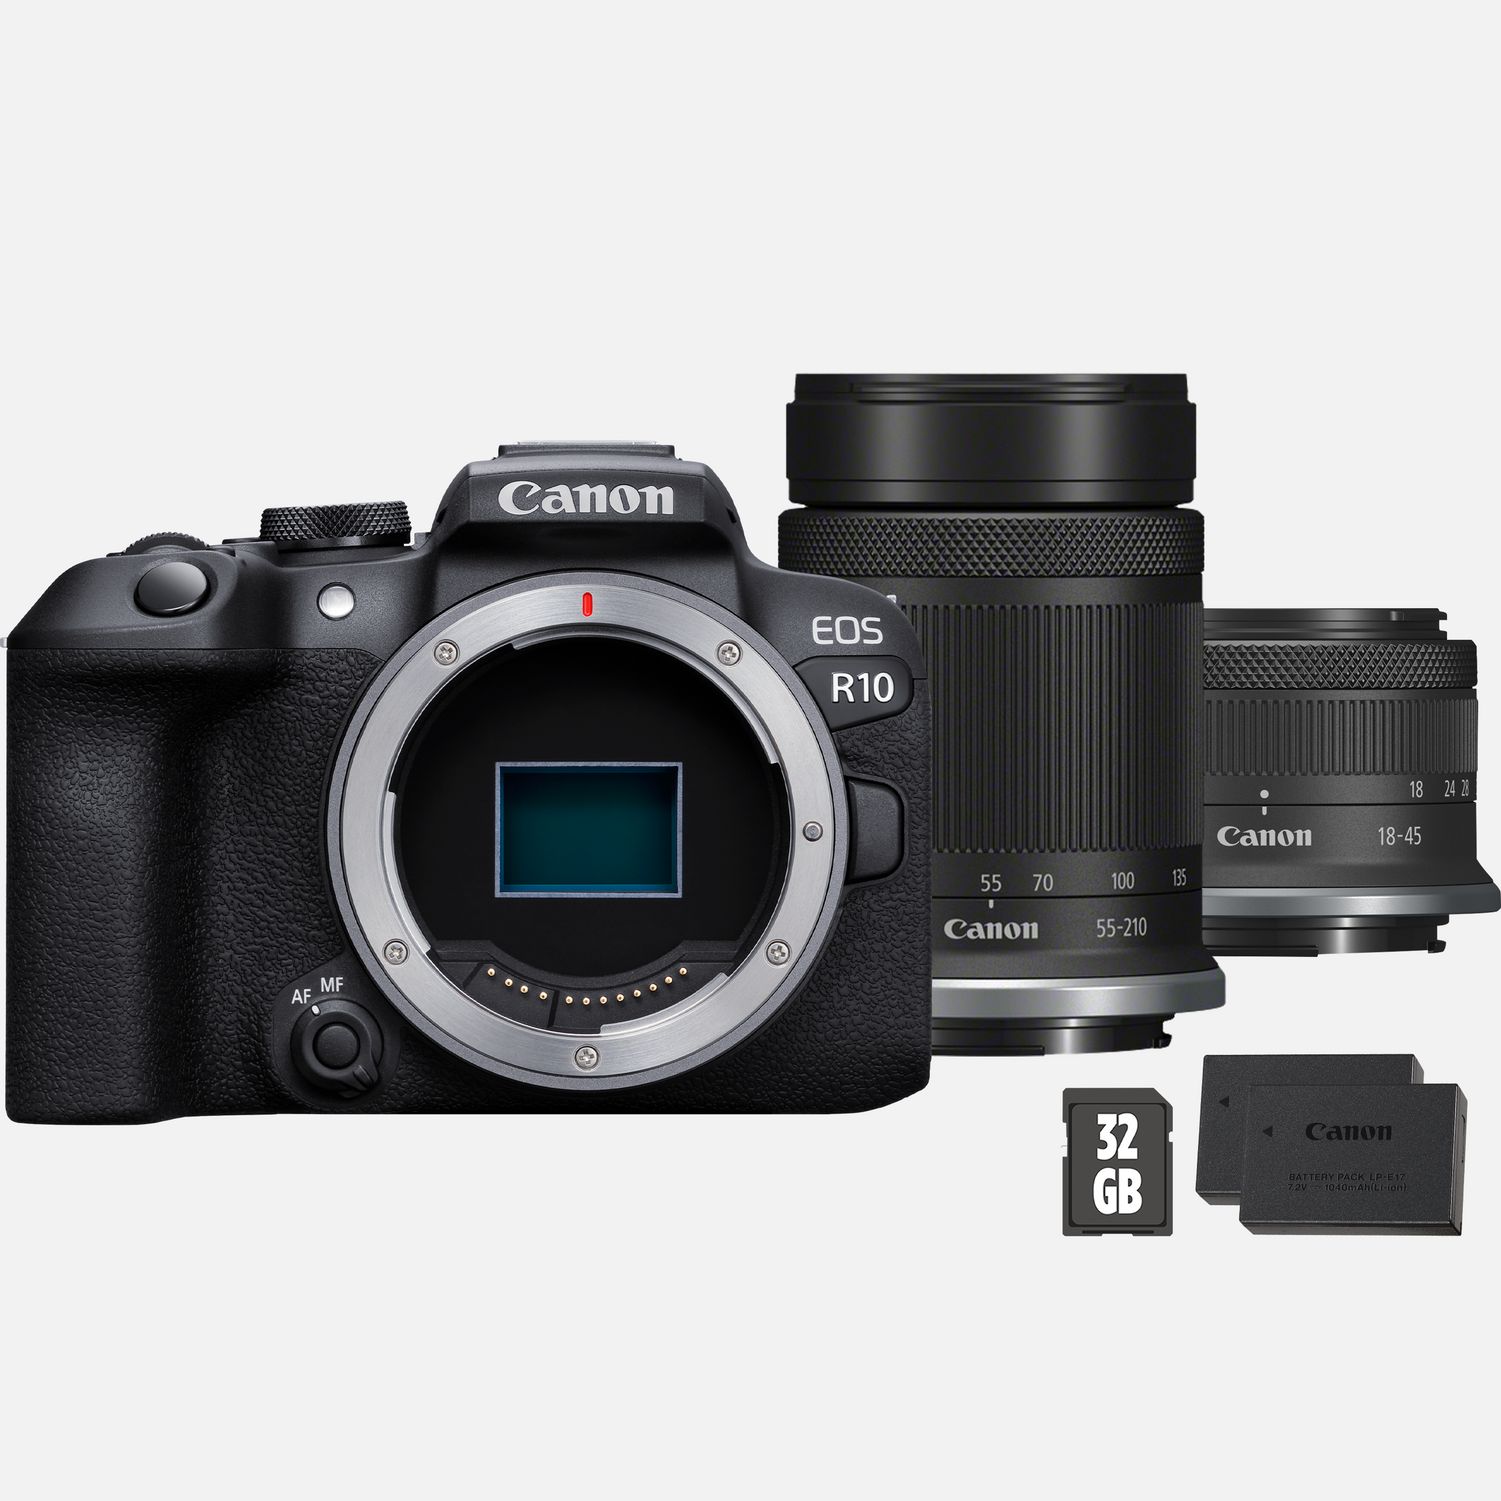 Image of Fotocamera mirrorless Canon EOS R10 + obiettivo RF-S 55-210mm + obiettivo RF-S 18-45mm + scheda SD + batteria aggiuntiva